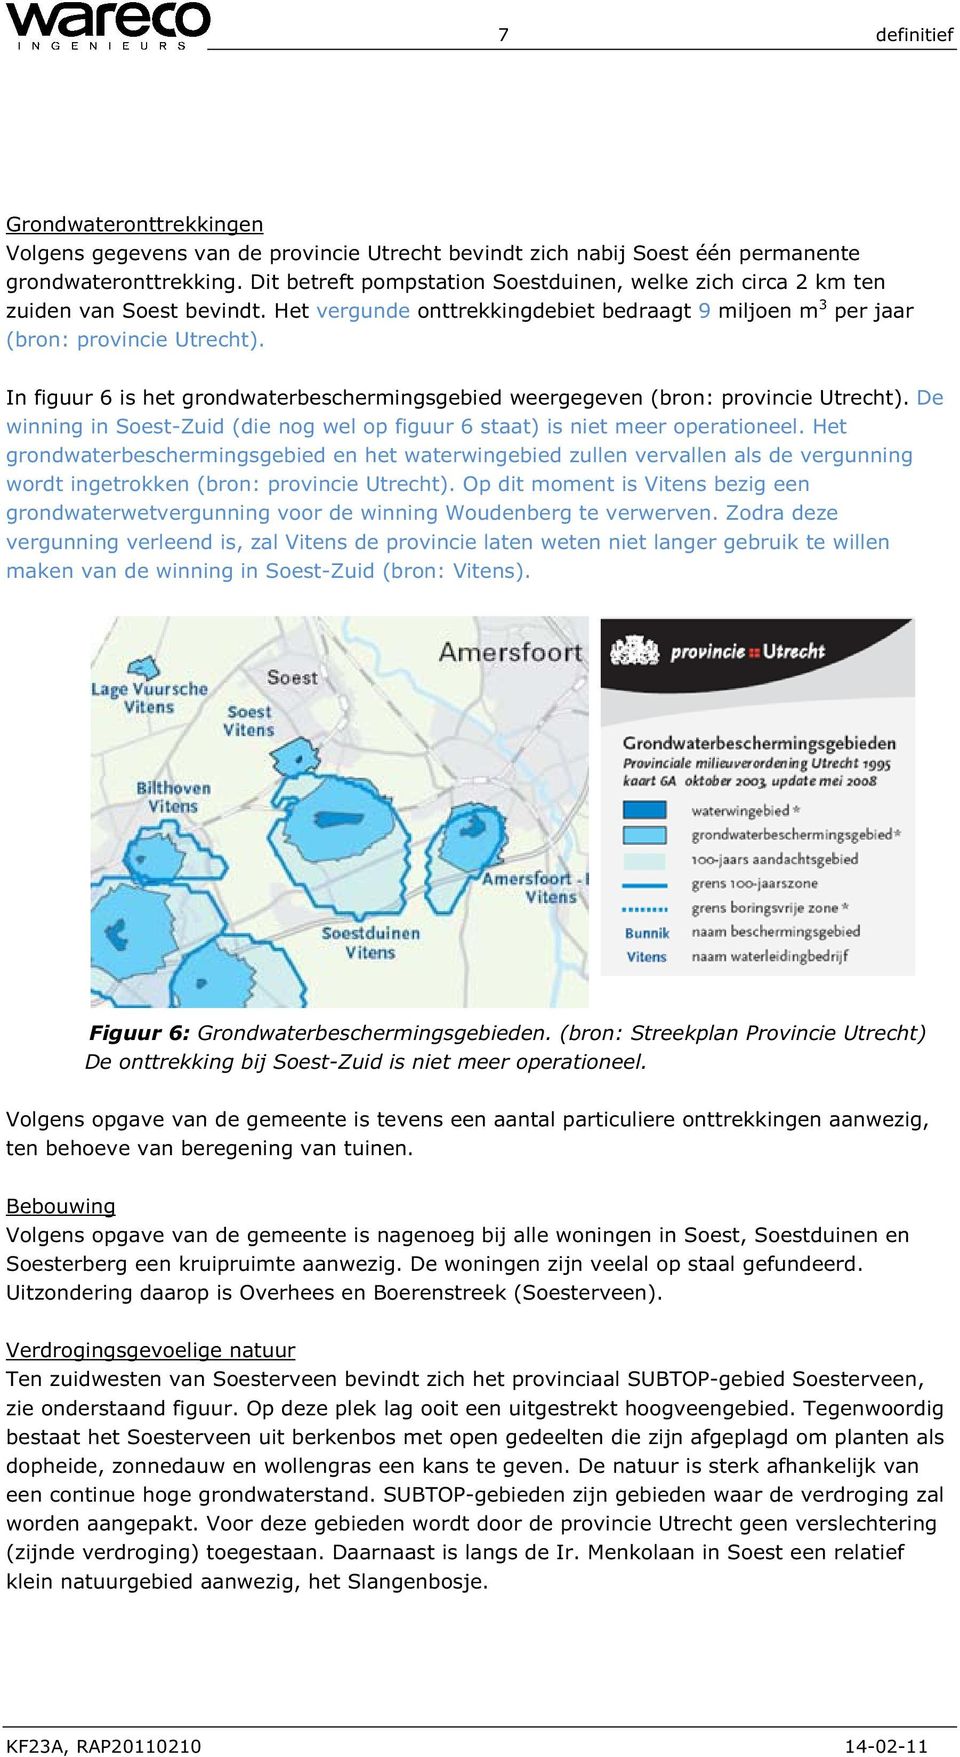 In figuur 6 is het grondwaterbeschermingsgebied weergegeven (bron: provincie Utrecht). De winning in Soest-Zuid (die nog wel op figuur 6 staat) is niet meer operationeel.